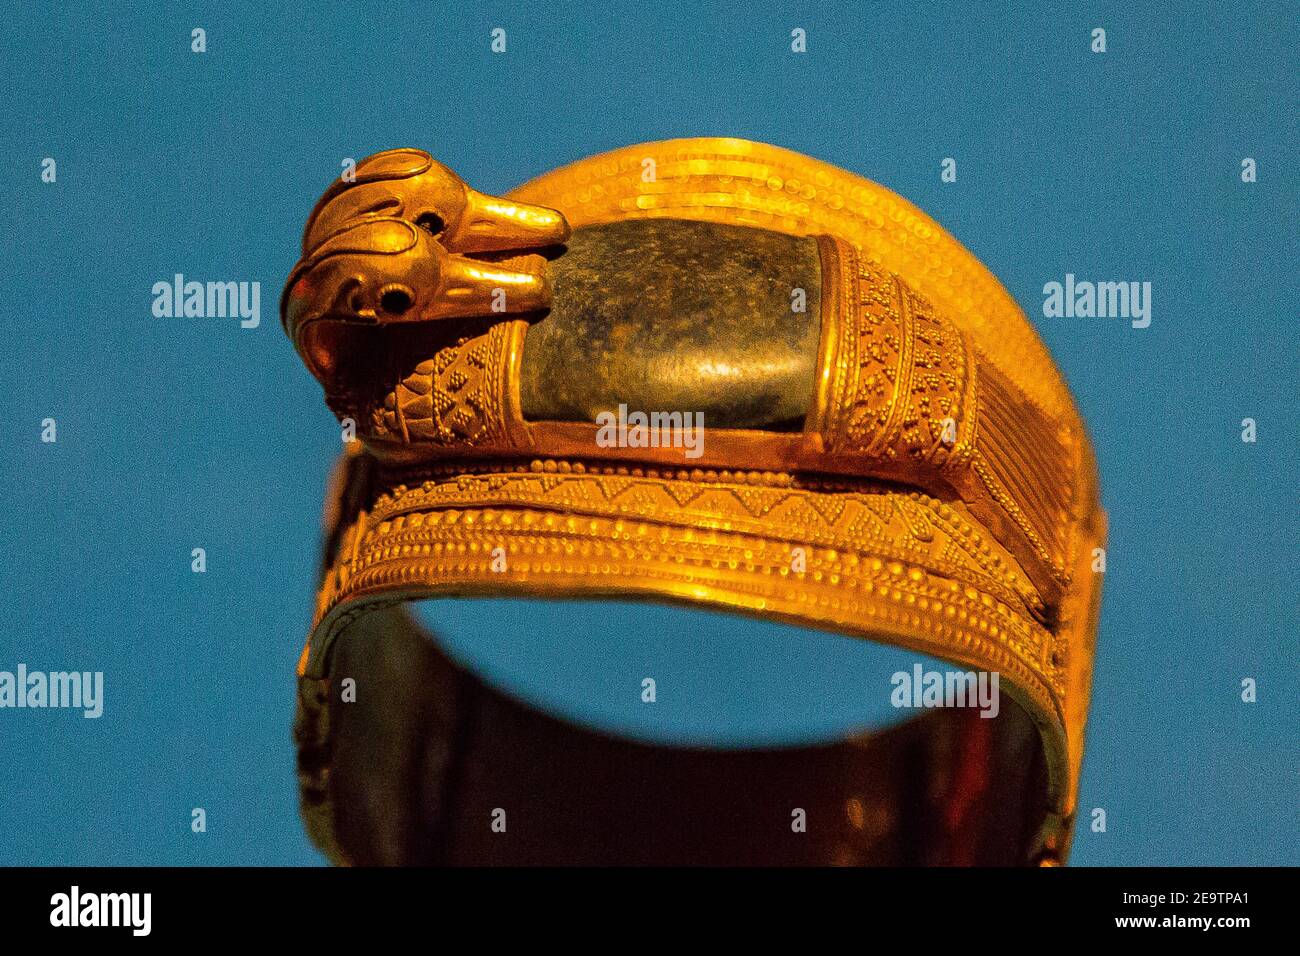 Egypte, le Caire, le Musée égyptien, un bracelet trouvé dans le Trésor de Zagazig (Bubastis), dans le Delta égyptien. Or et lapis-lazuli, avec têtes de canard. Banque D'Images